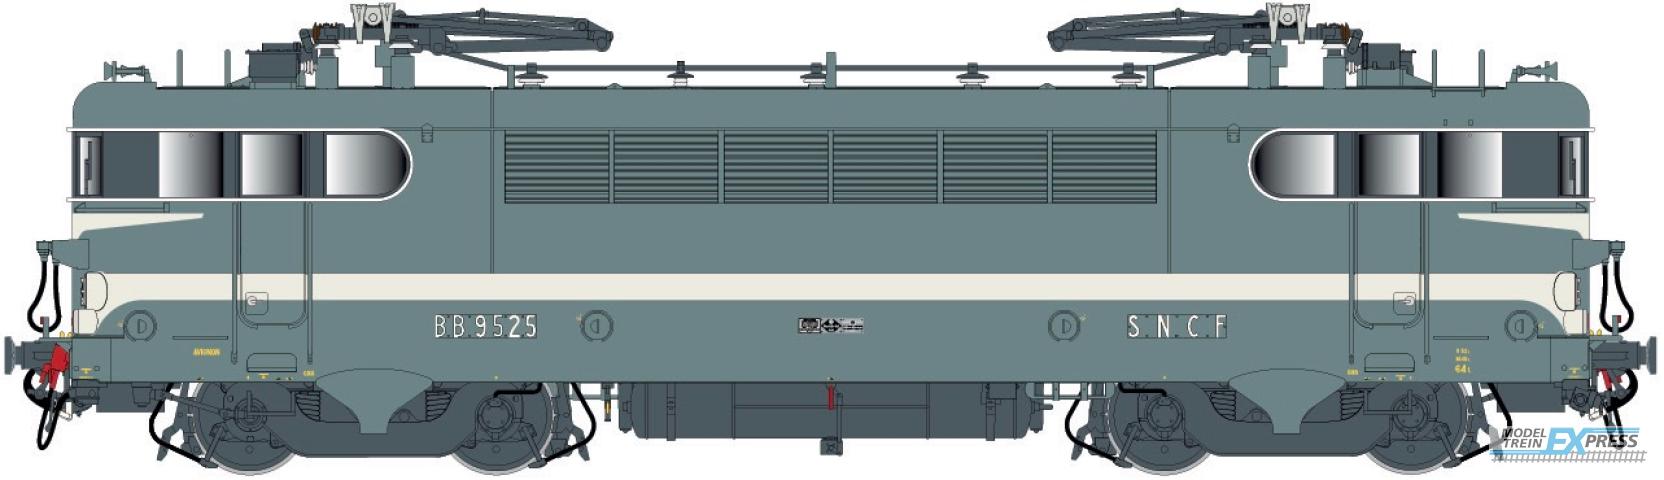 LS Models 10750S BB 9525, Béziers-livrei, brede witte lijn, geschilderde snorren, depot Avignon  /  Ep. IV  /  SNCF  /  HO  /  AC SOUND  /  1 P.